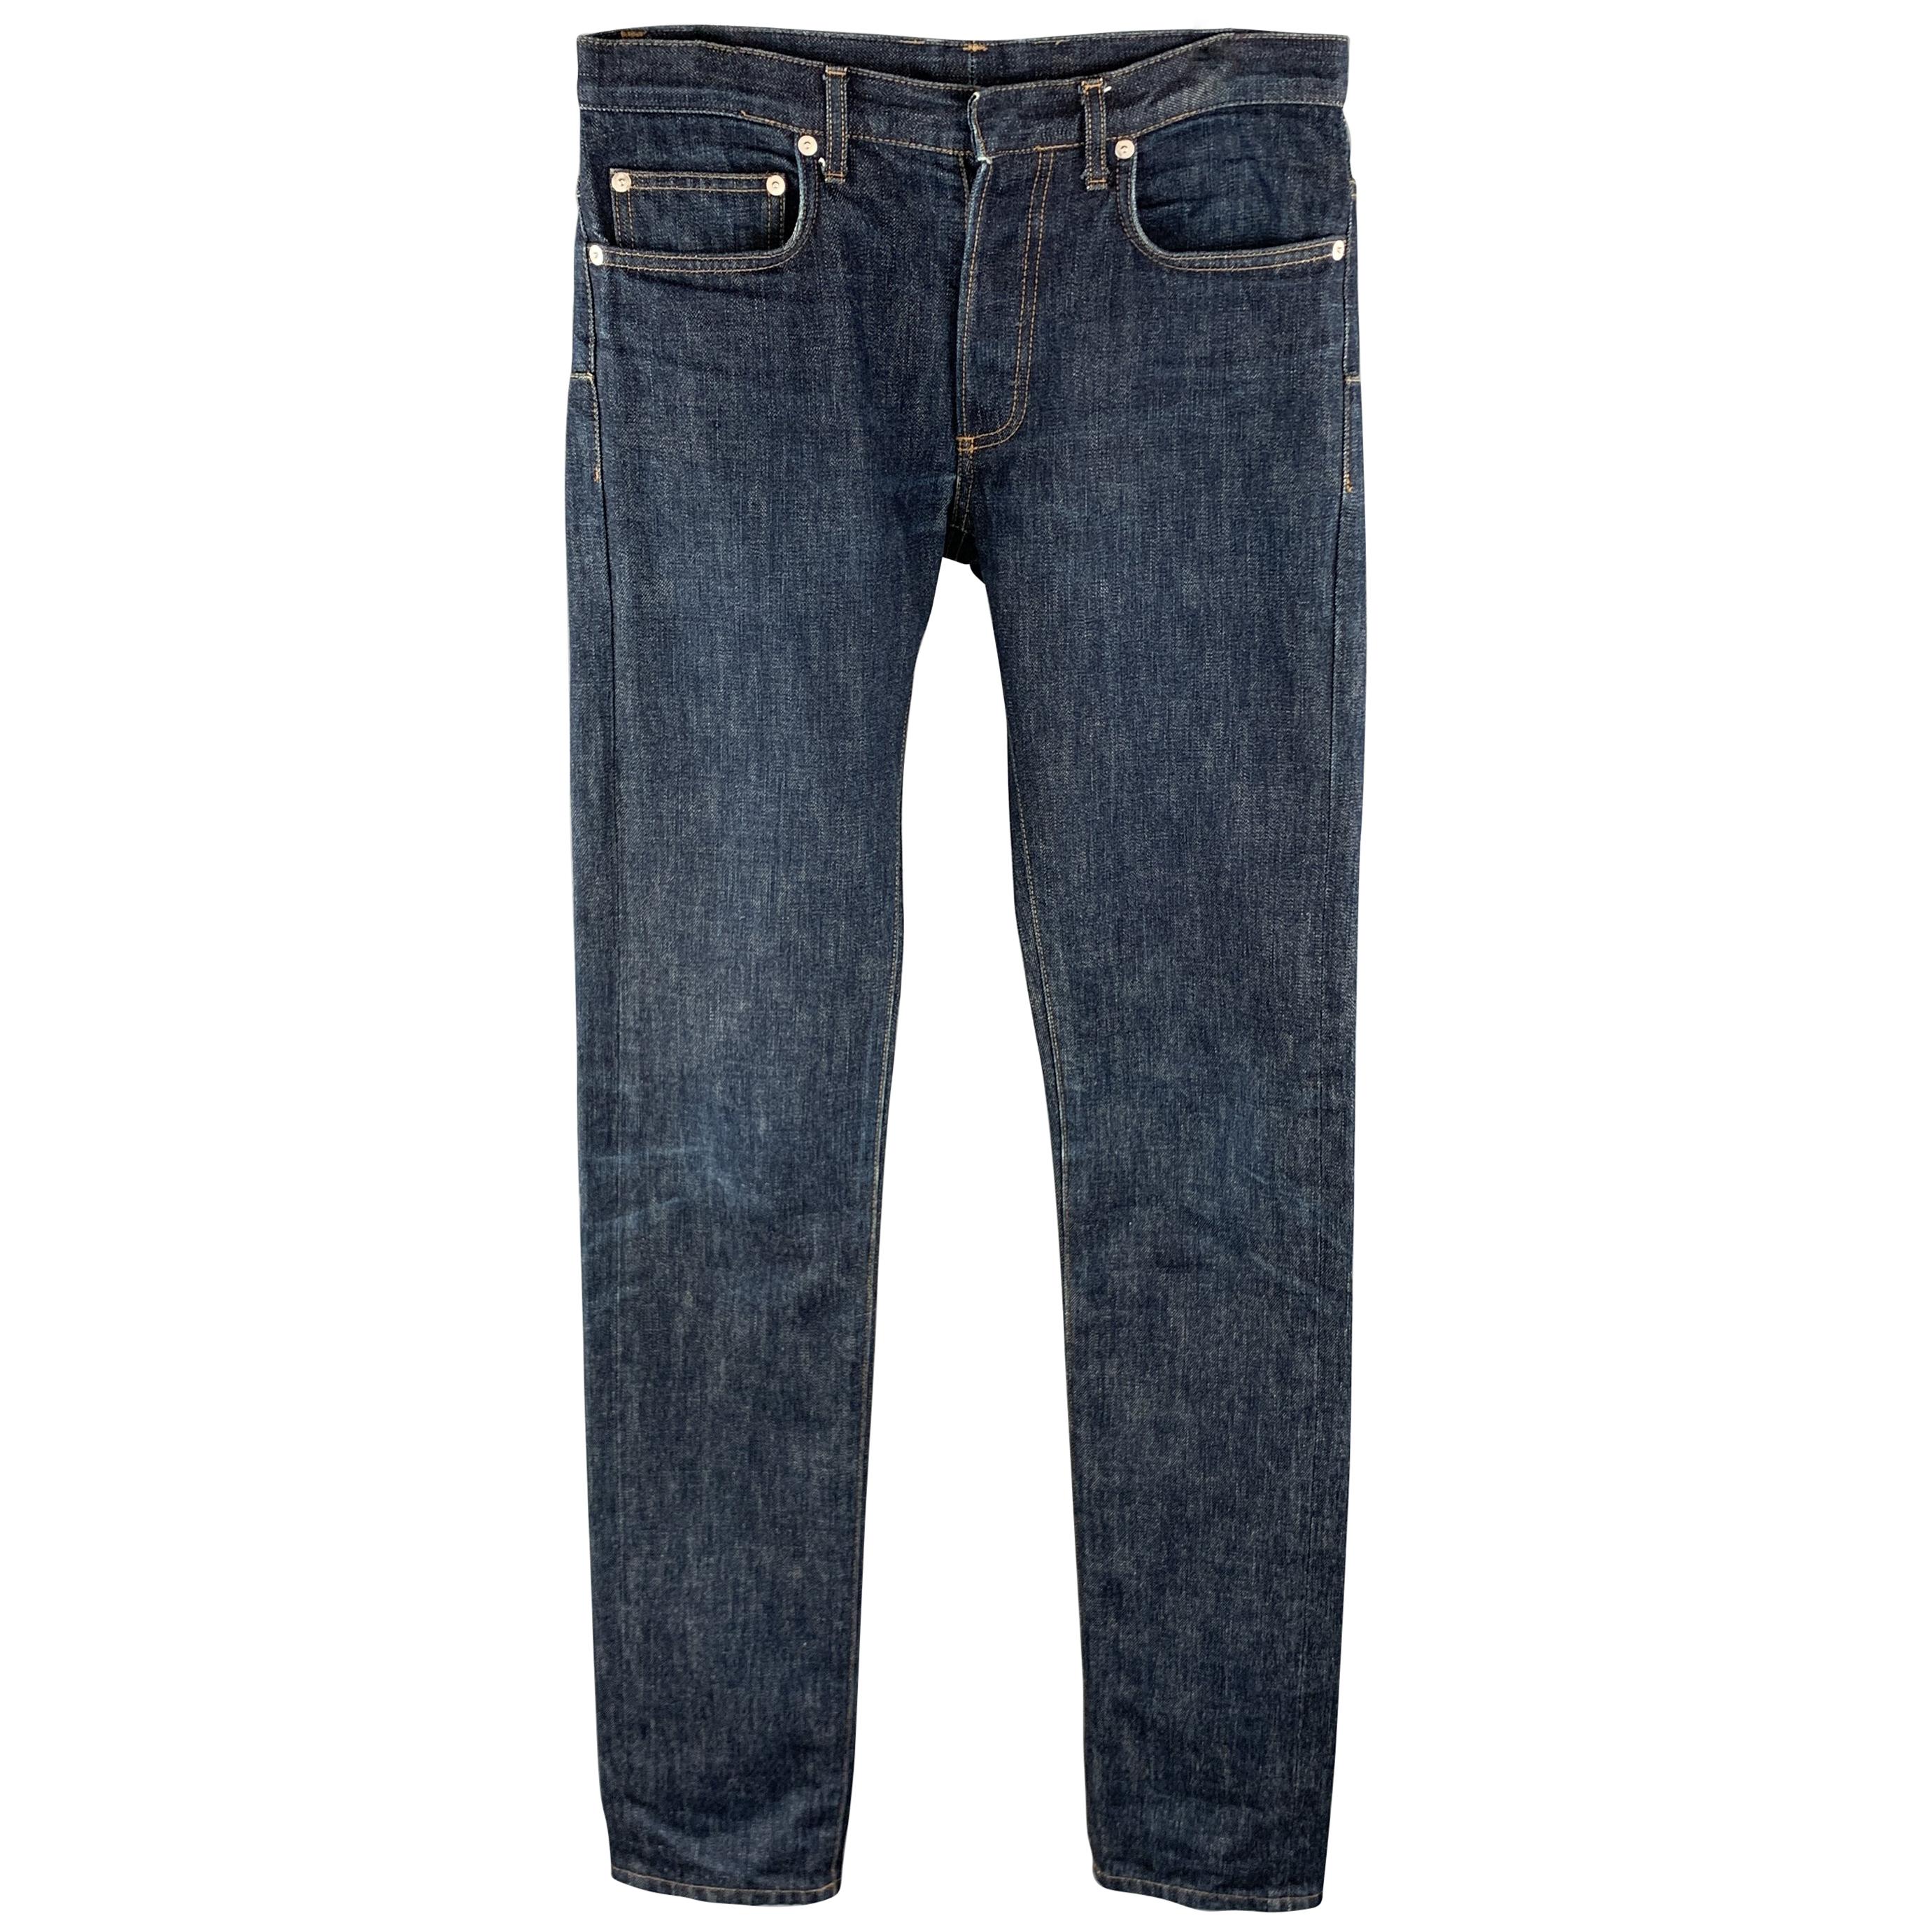 DIOR HOMME Size 31 x 29 Indigo Wash Denim Button Fly Jeans